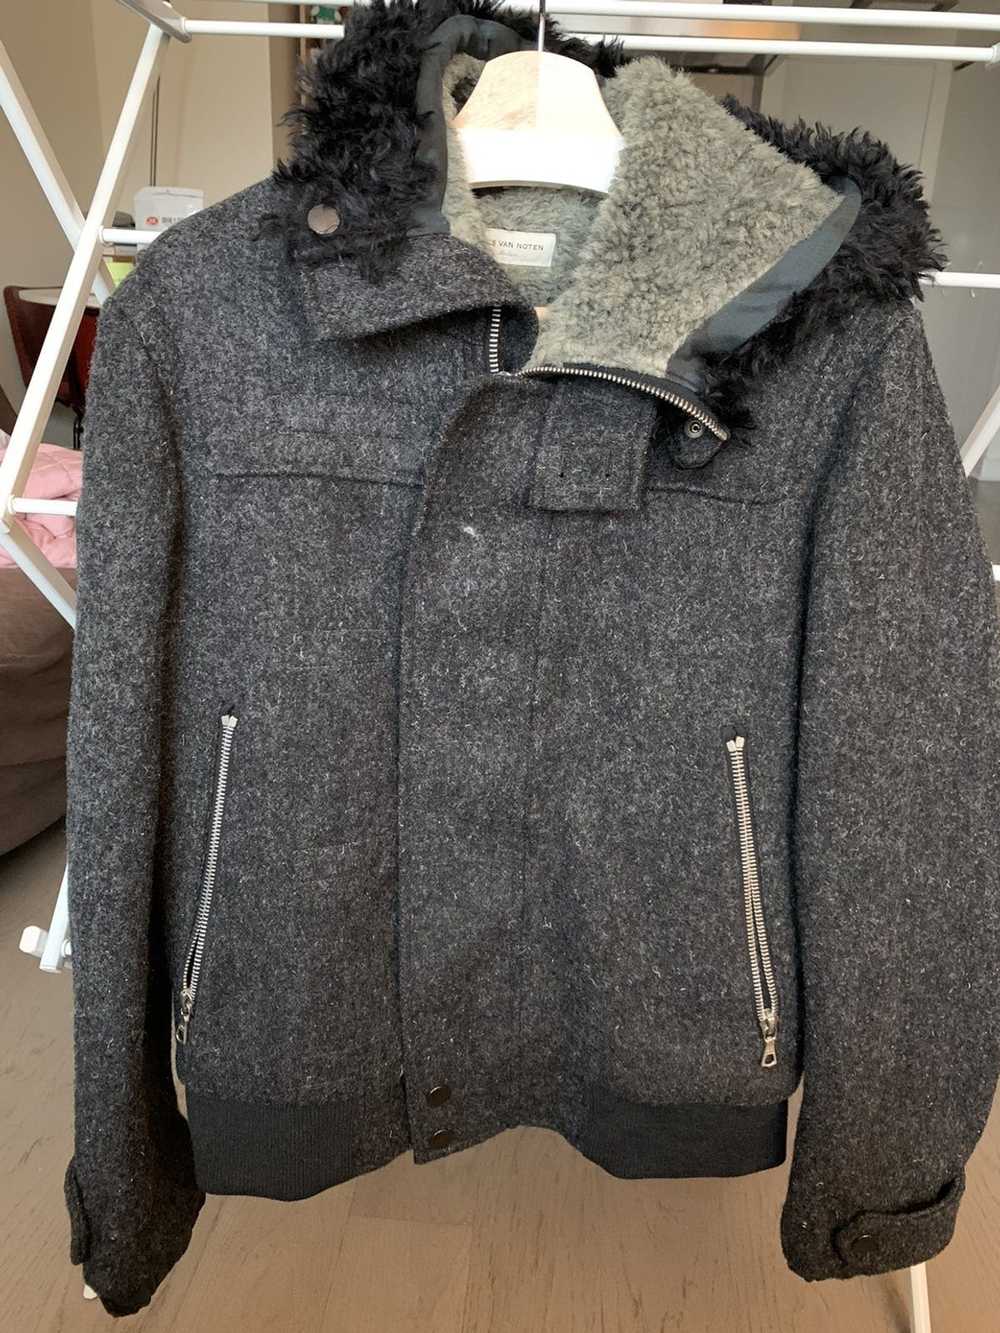 Dries Van Noten Dries shearling wool jacket - image 1